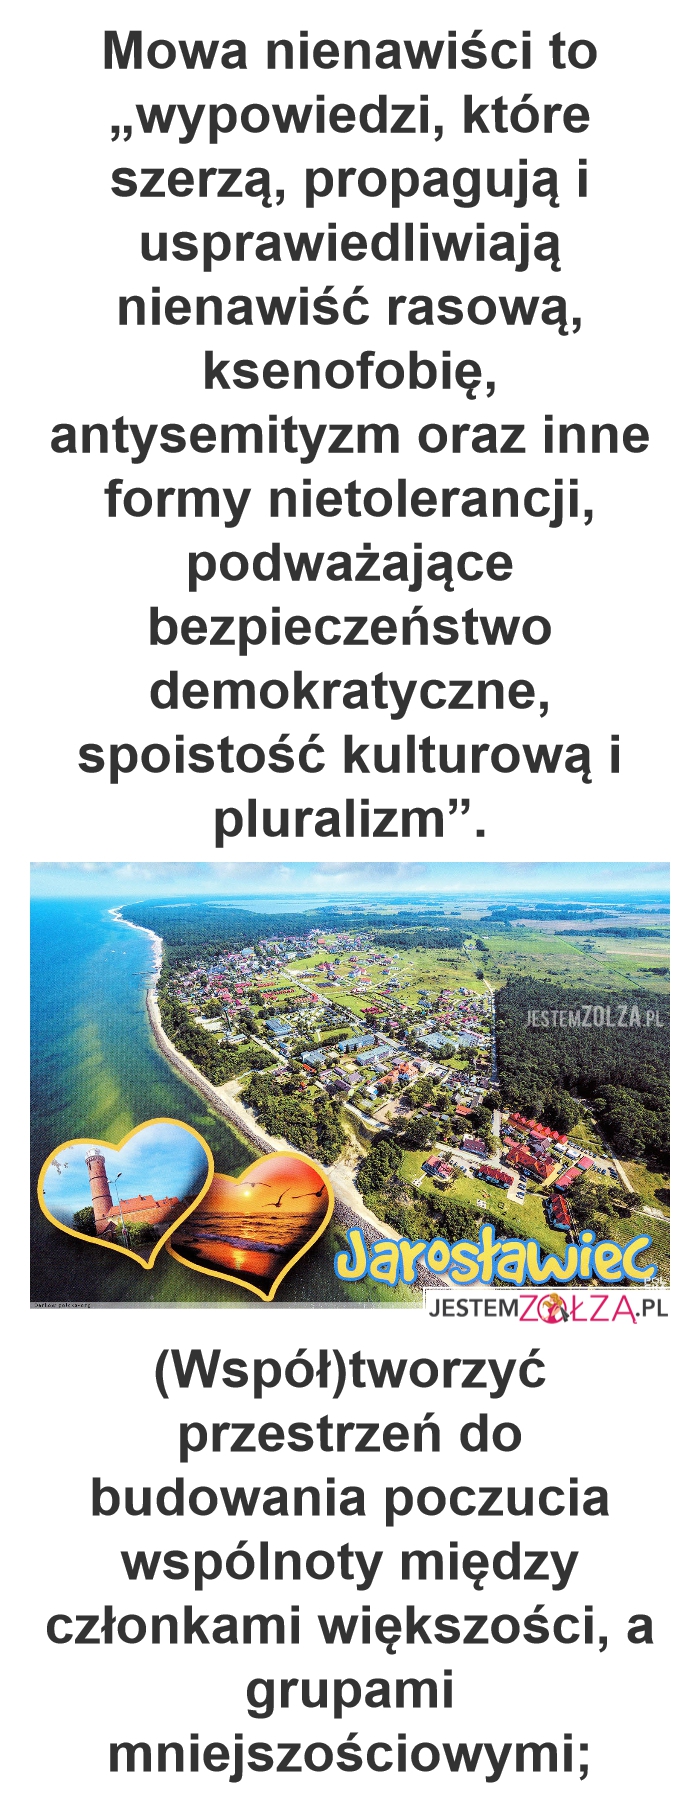 Nienawiść, którą dajesz , jarosławiec : podżeganie do nienawisci miasto jarosława kaczyńskiego hmm